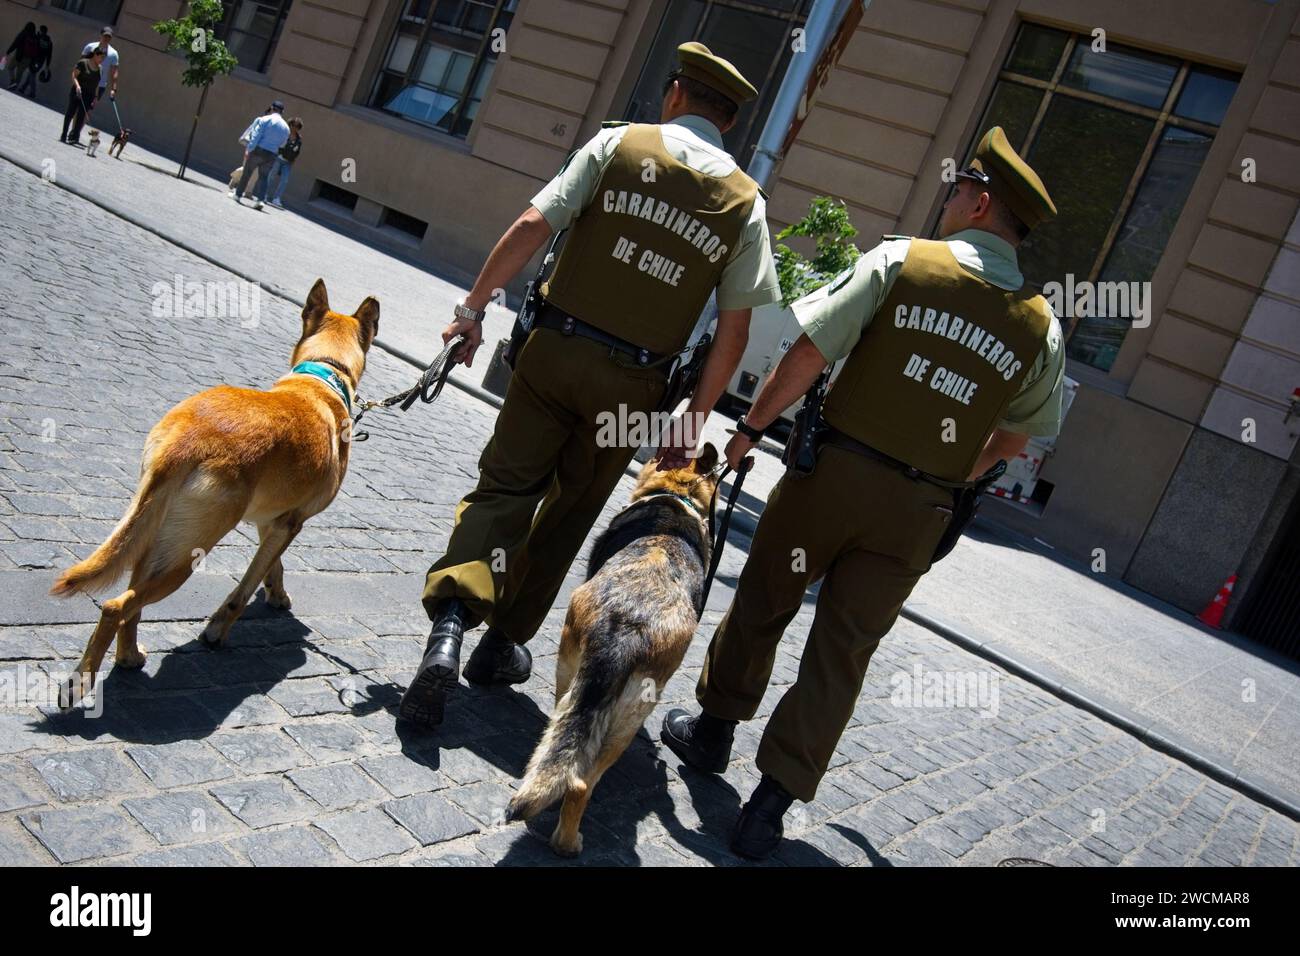 Santiago, Cile, Carabineros (polizia cilena) con cani di servizio a guardia della Moneda (palazzo presidenziale cileno) Foto Stock